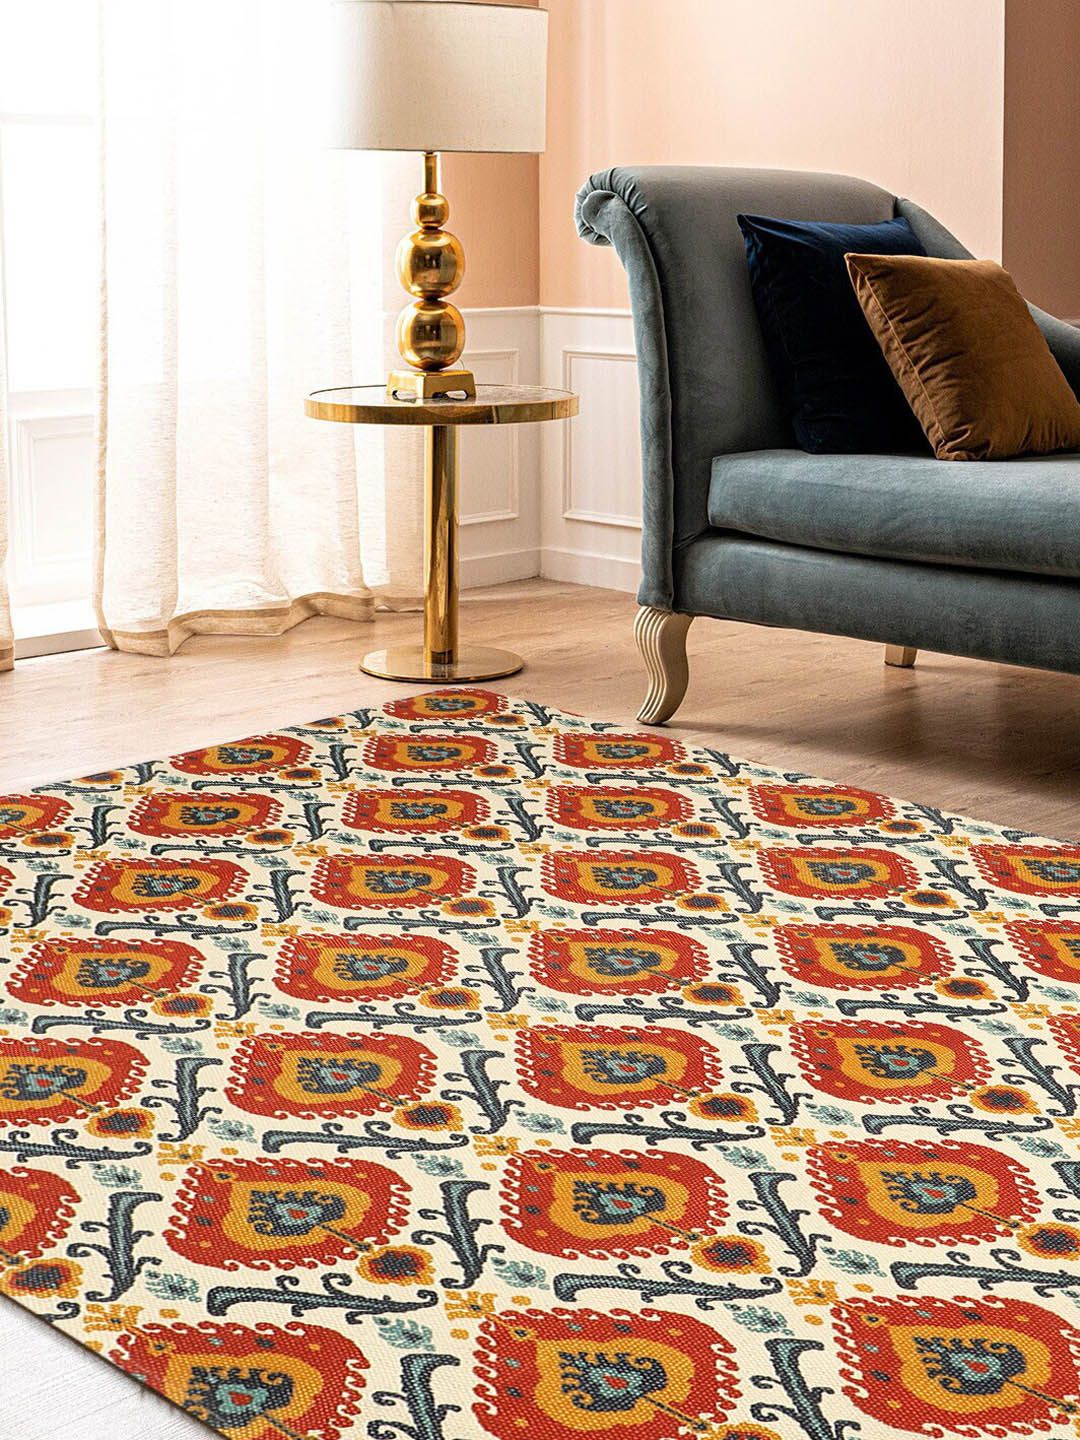 BLANC9 Multicoloured Printed 800 GSM Bath Carpet Price in India